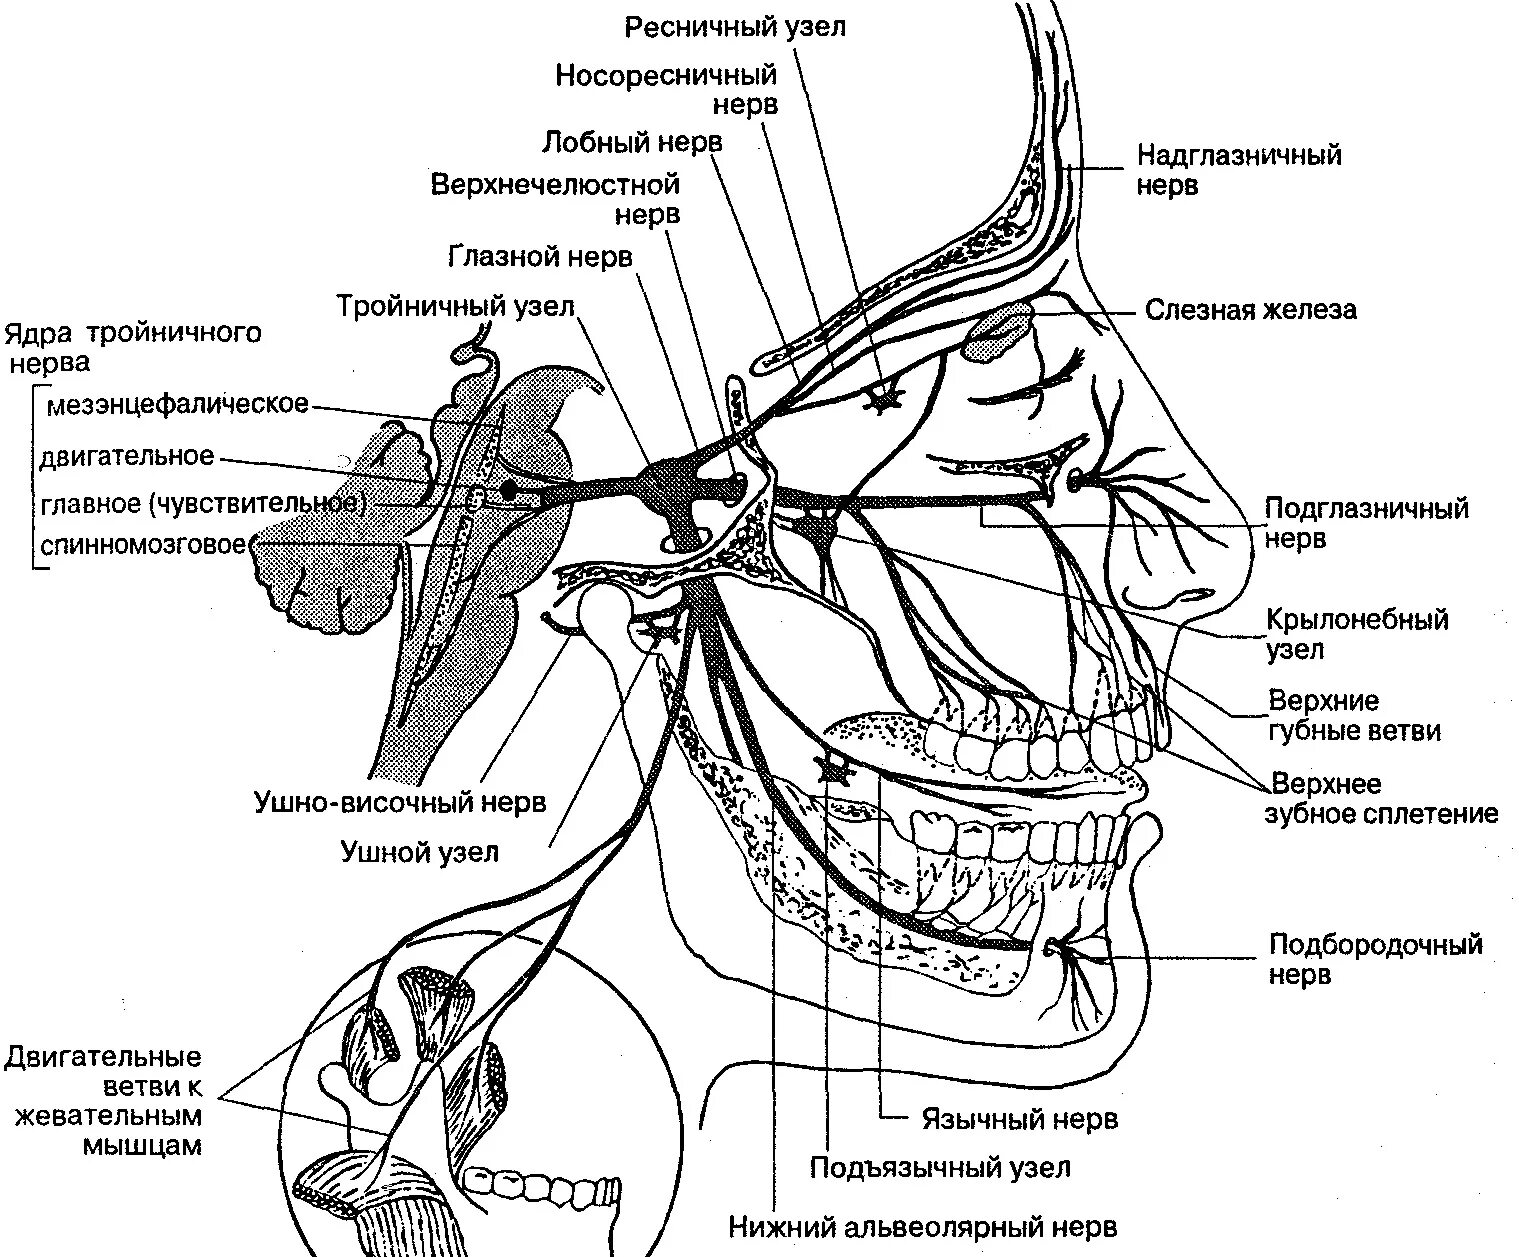 Можно греть тройничный нерв. Ветви тройничного нерва анатомия. Схема проекции ветвей тройничного нерва. Иннервация тройничного нерва схема. Узлы тройничного нерва анатомия.